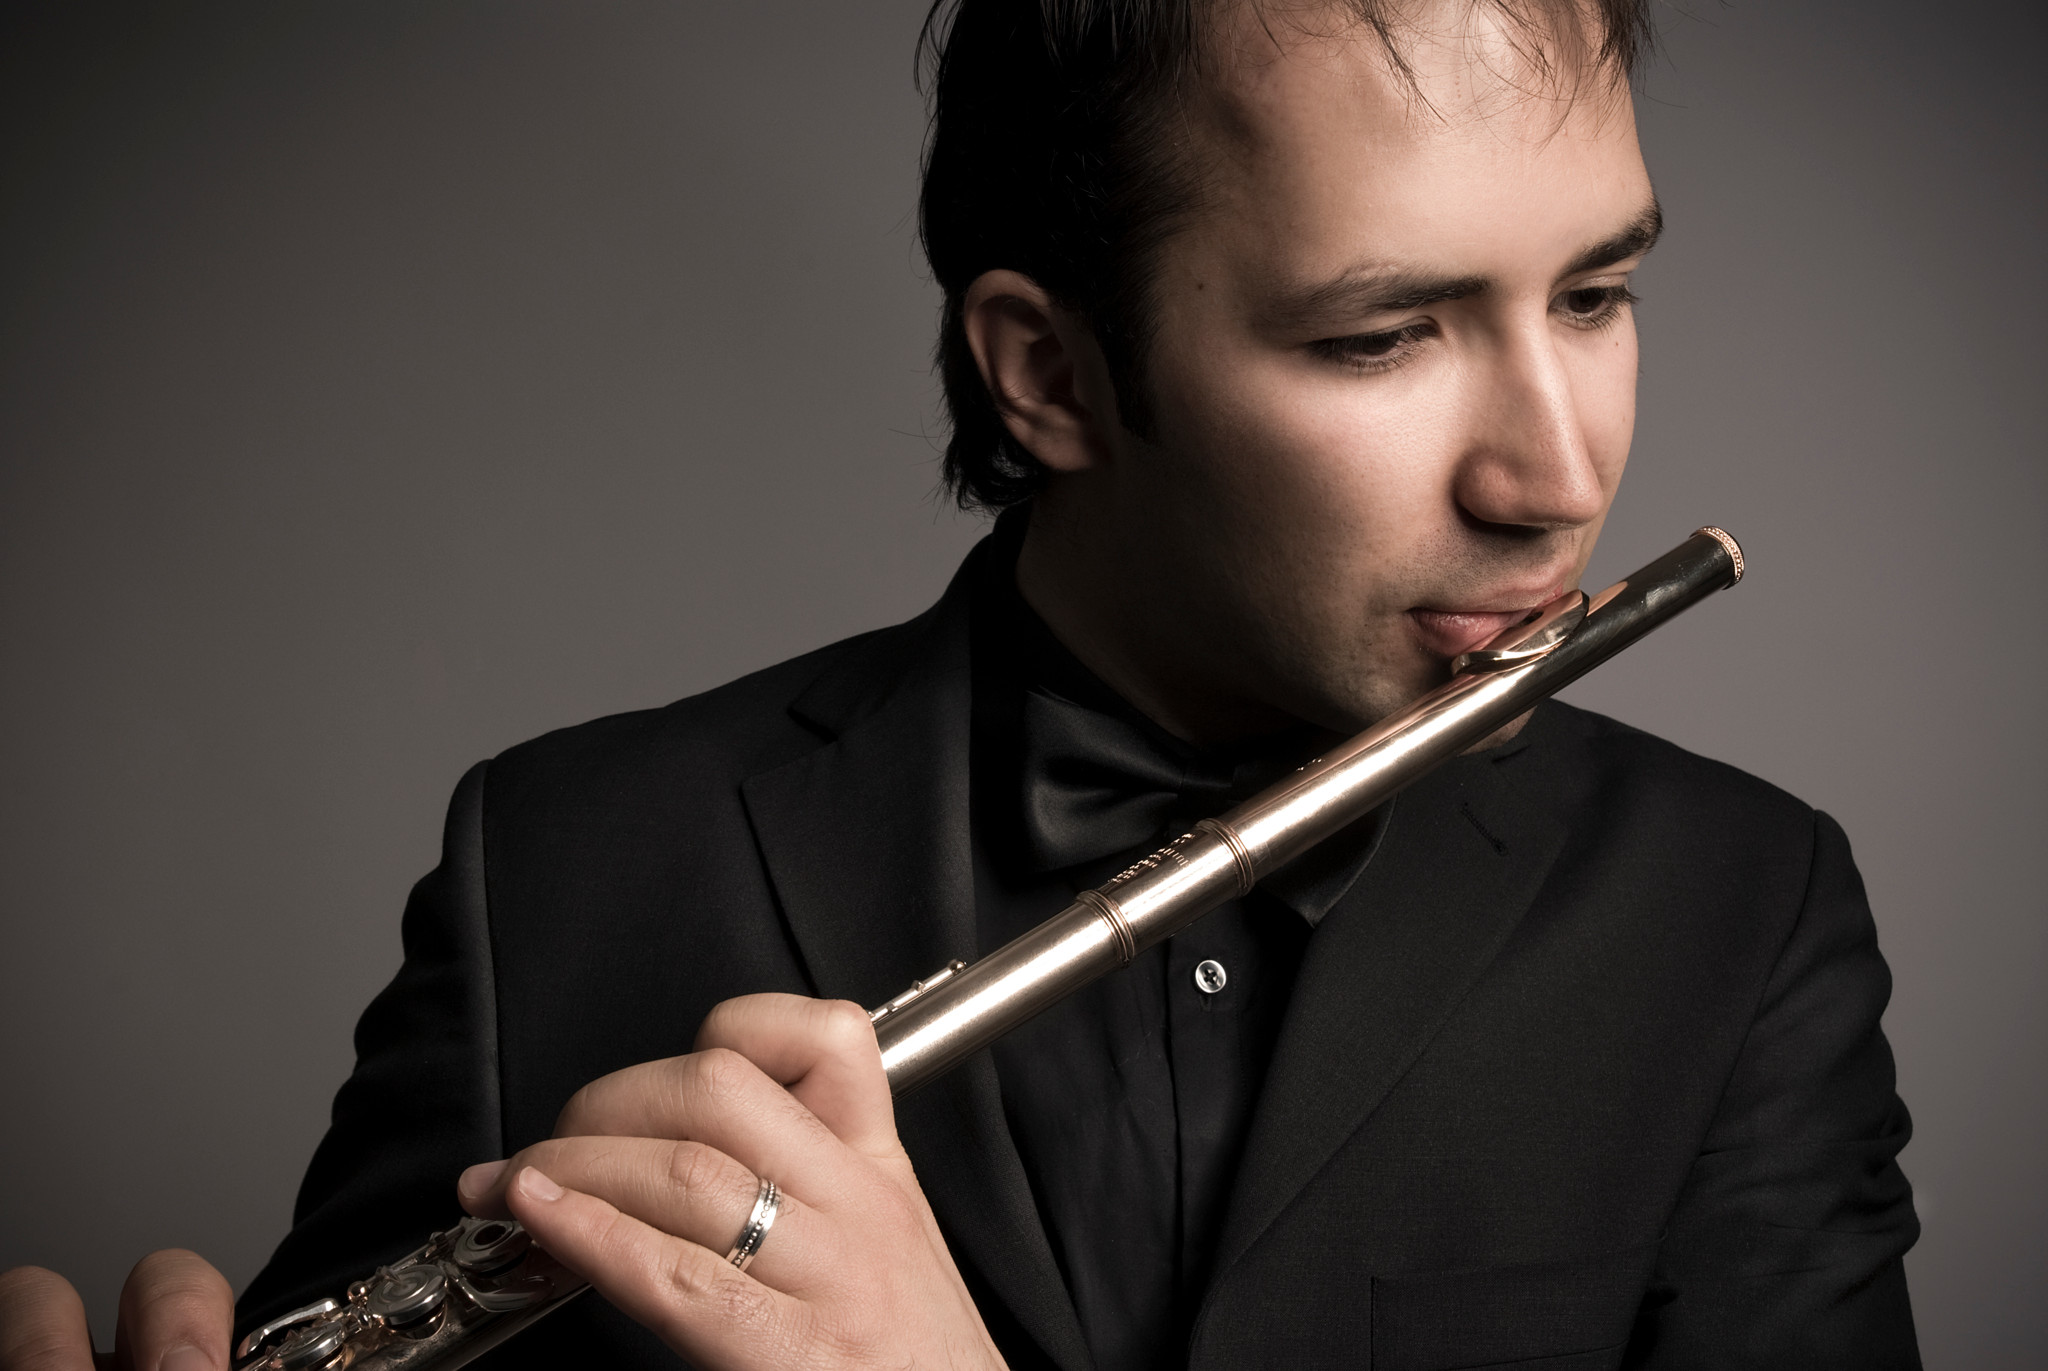 Der armenische Organist spielt diesmal Flöte